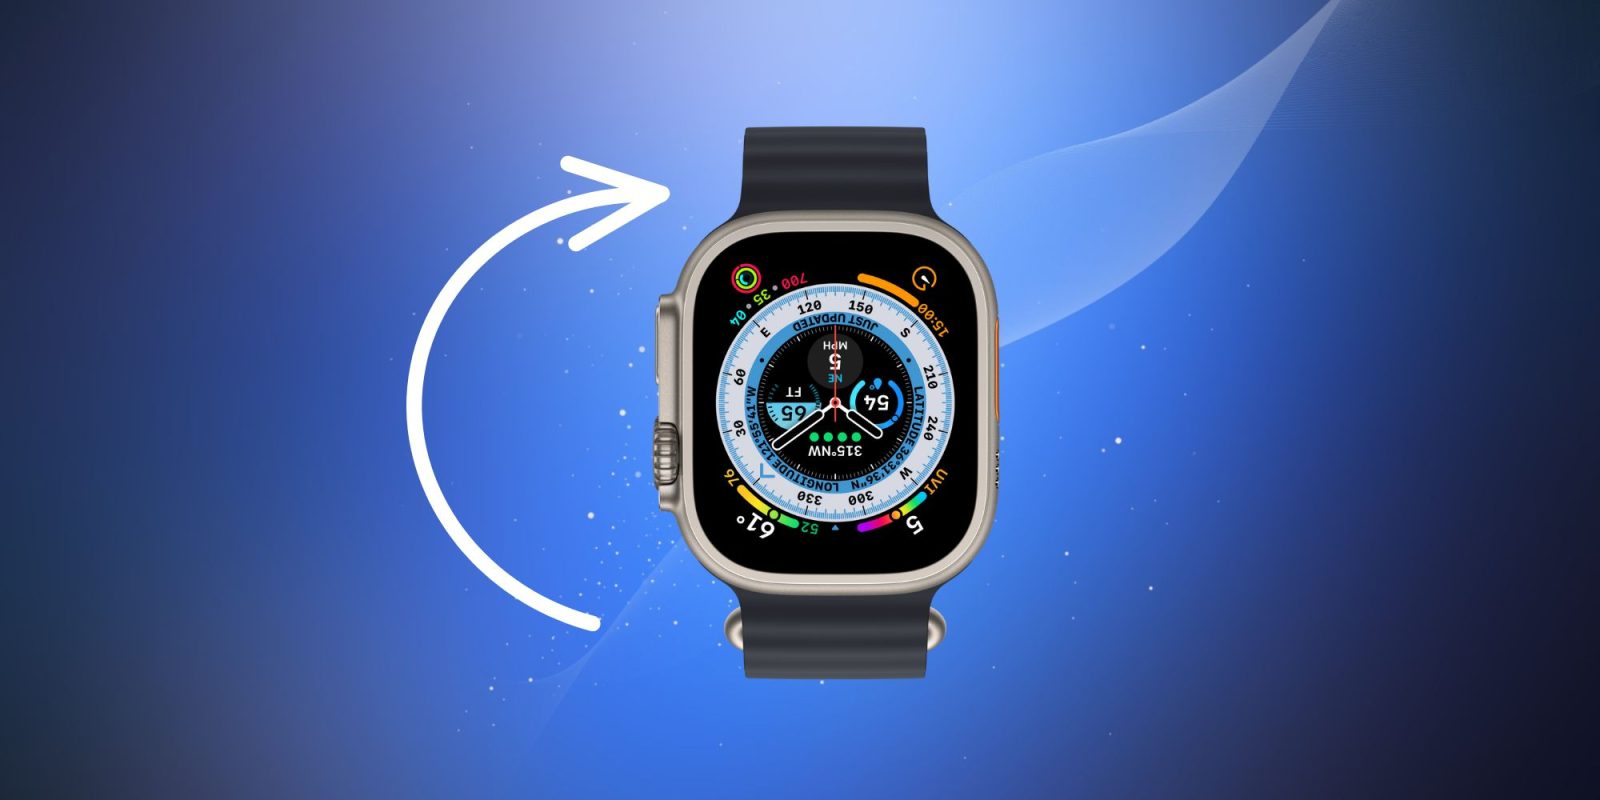 Apple Watch ultra change orientation